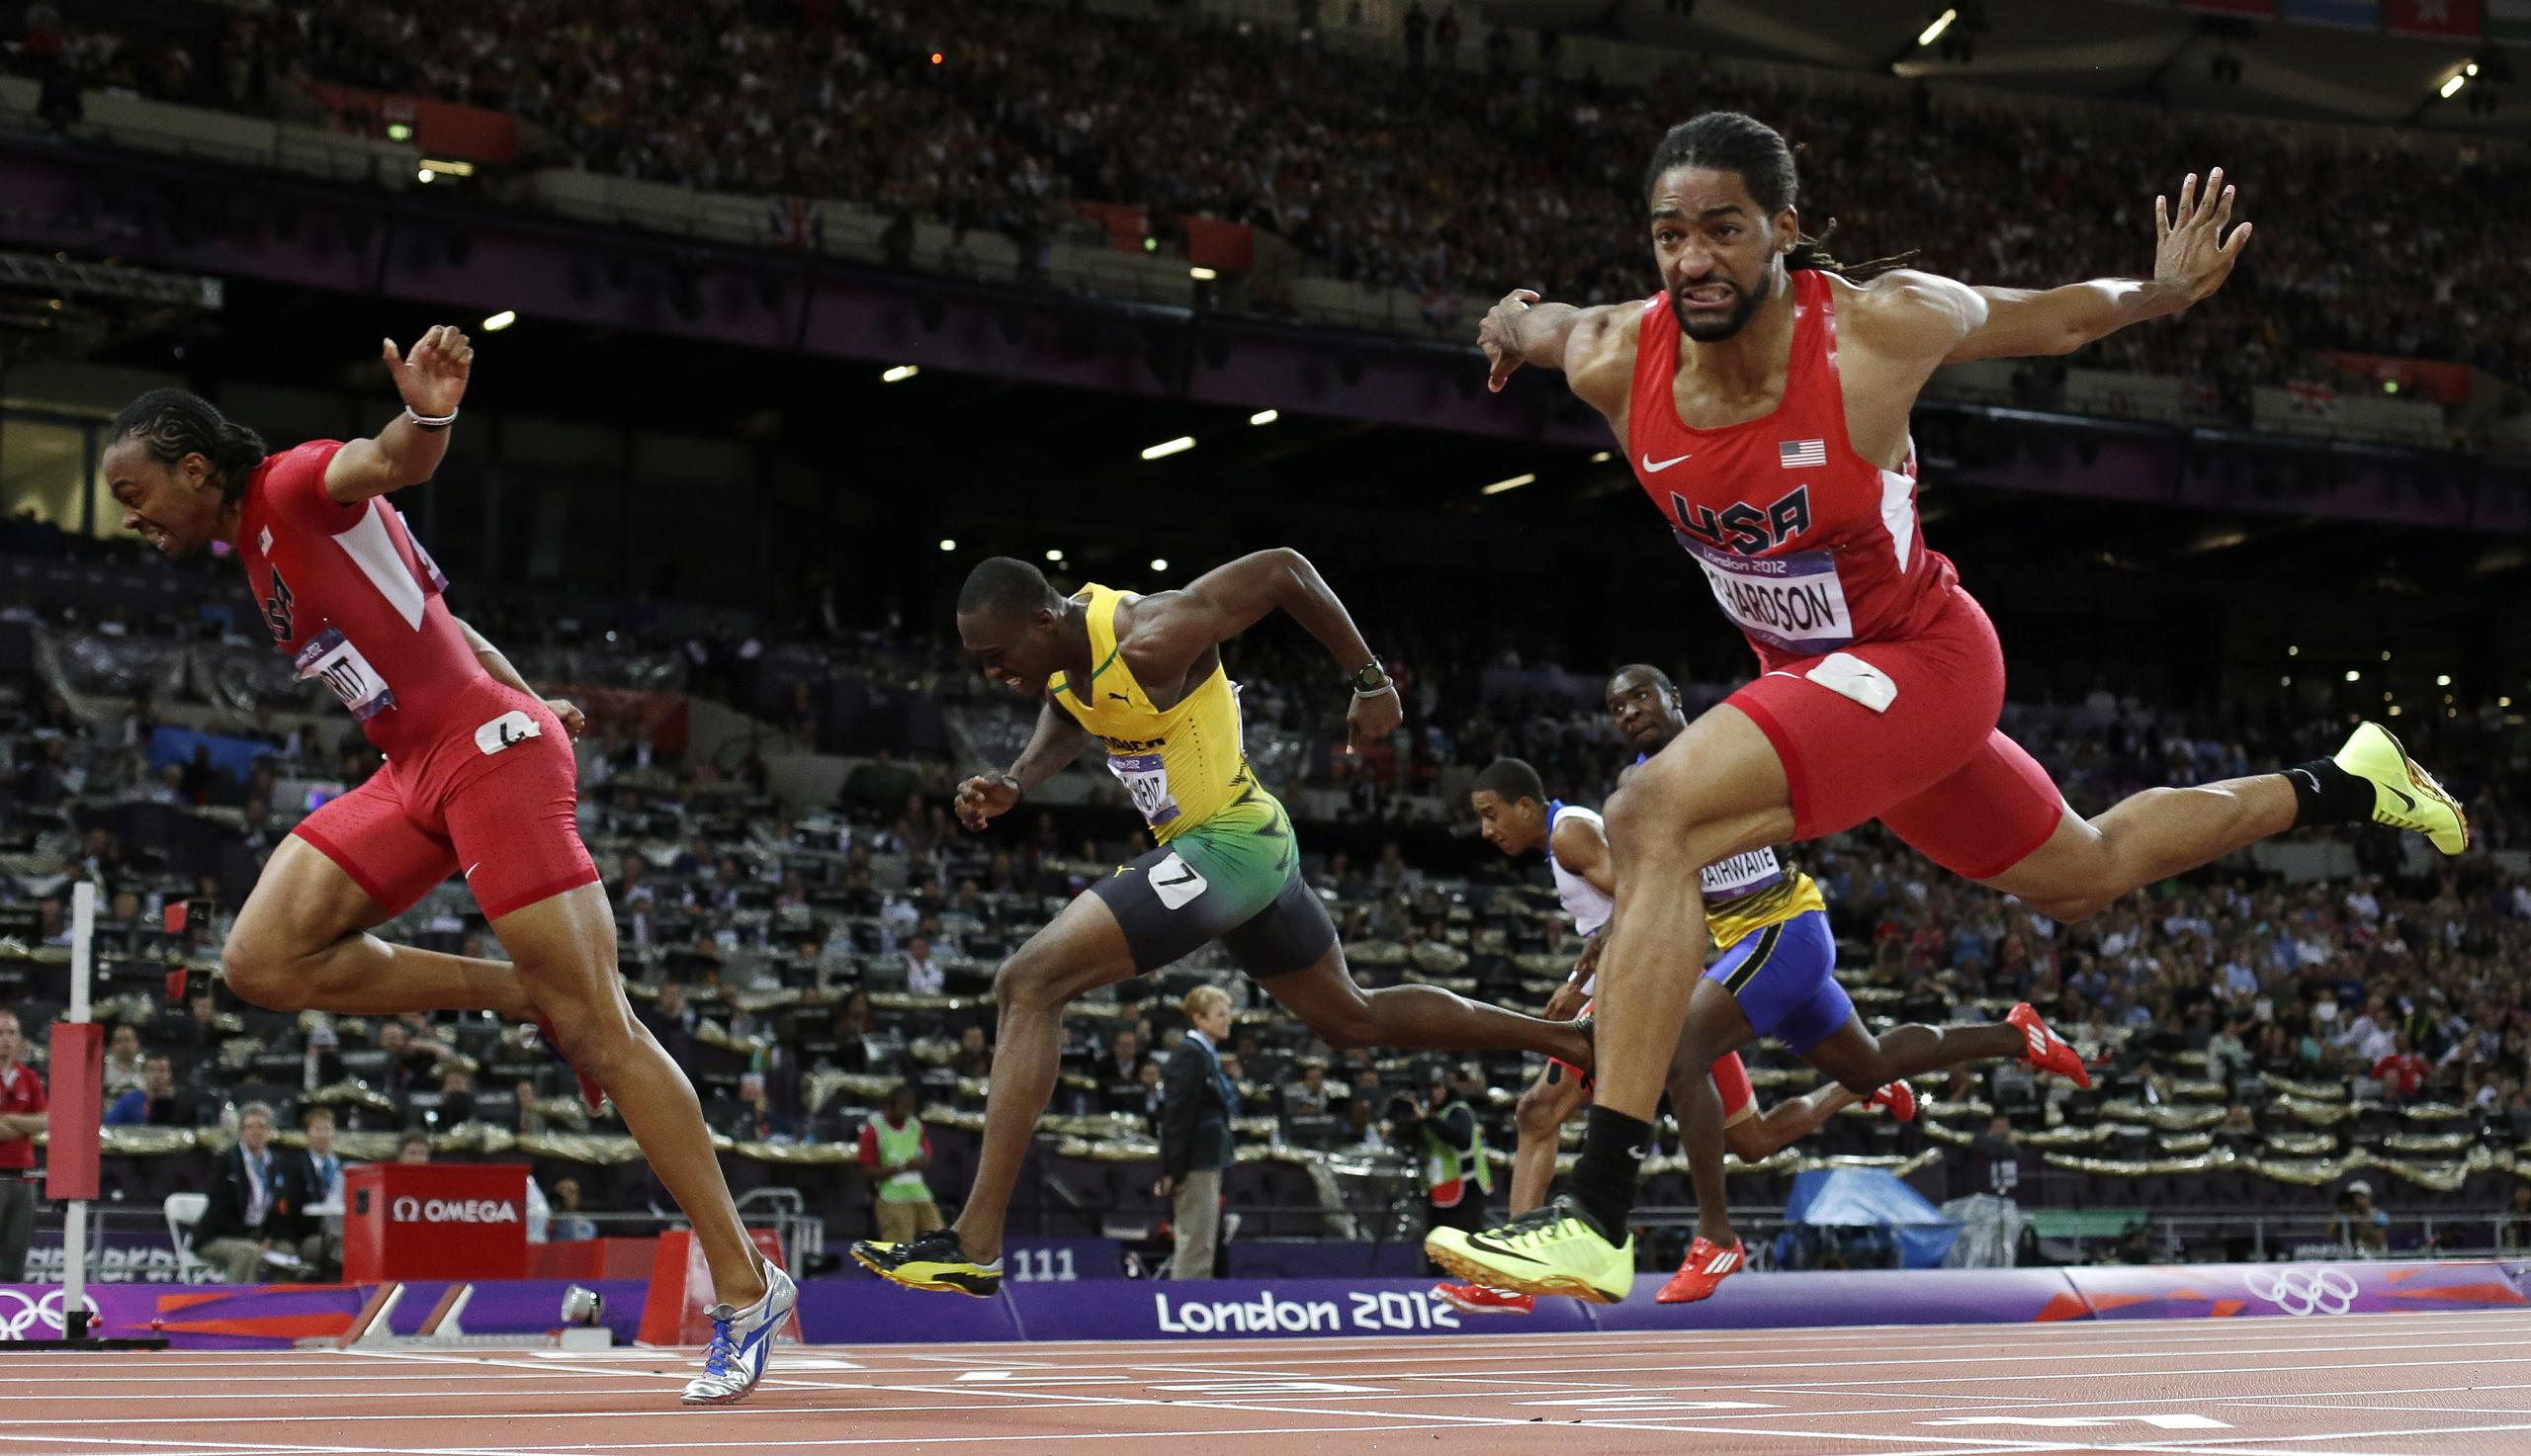 Hansle Parchment, al centro en esta foto en la acción de las Olimpiadas Londres 2012, es el actual campeón olímpico del evento 110 metros con vallas.